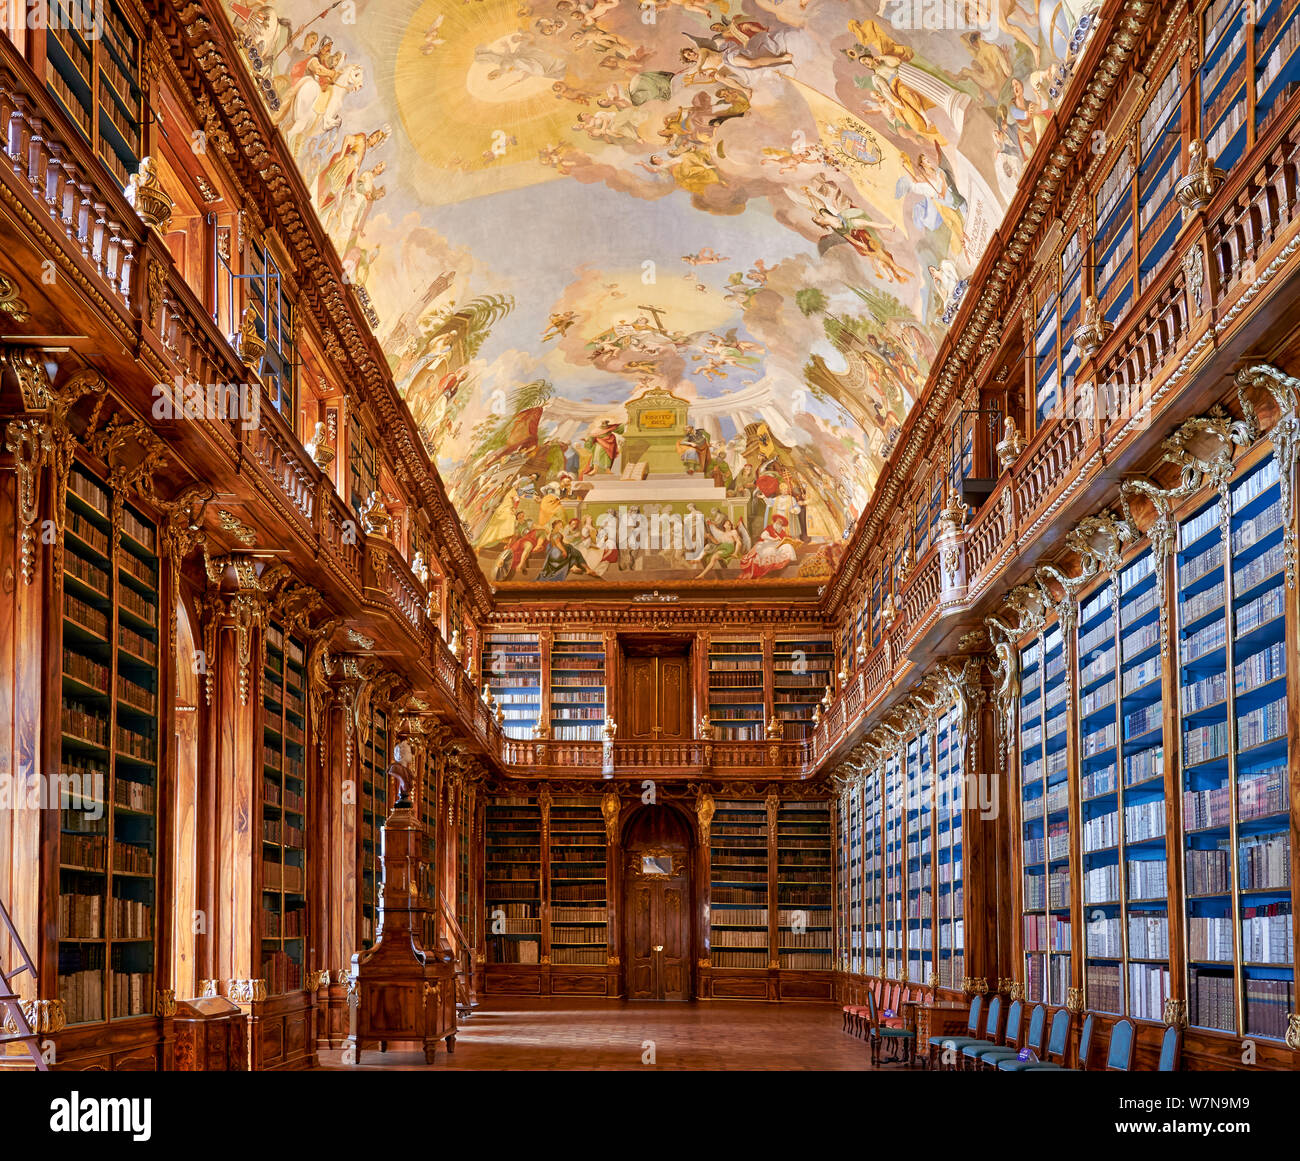 Praga, República Checa. La antigua biblioteca en el monasterio de Strahov Foto de stock